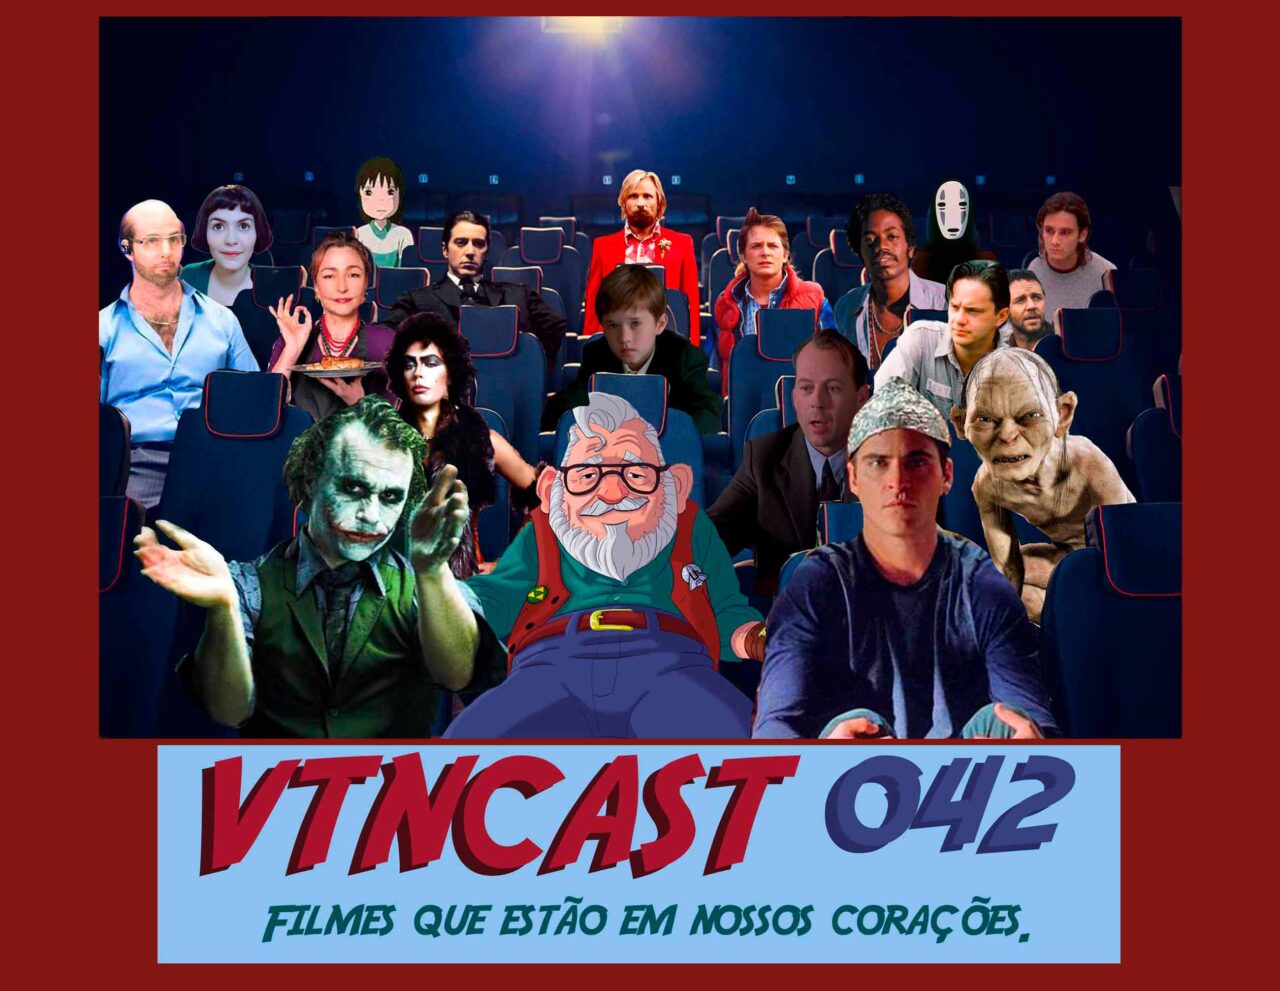 Podcast VTNCast 042 - Filmes que moram em nossos corações. Velho também vê filme.